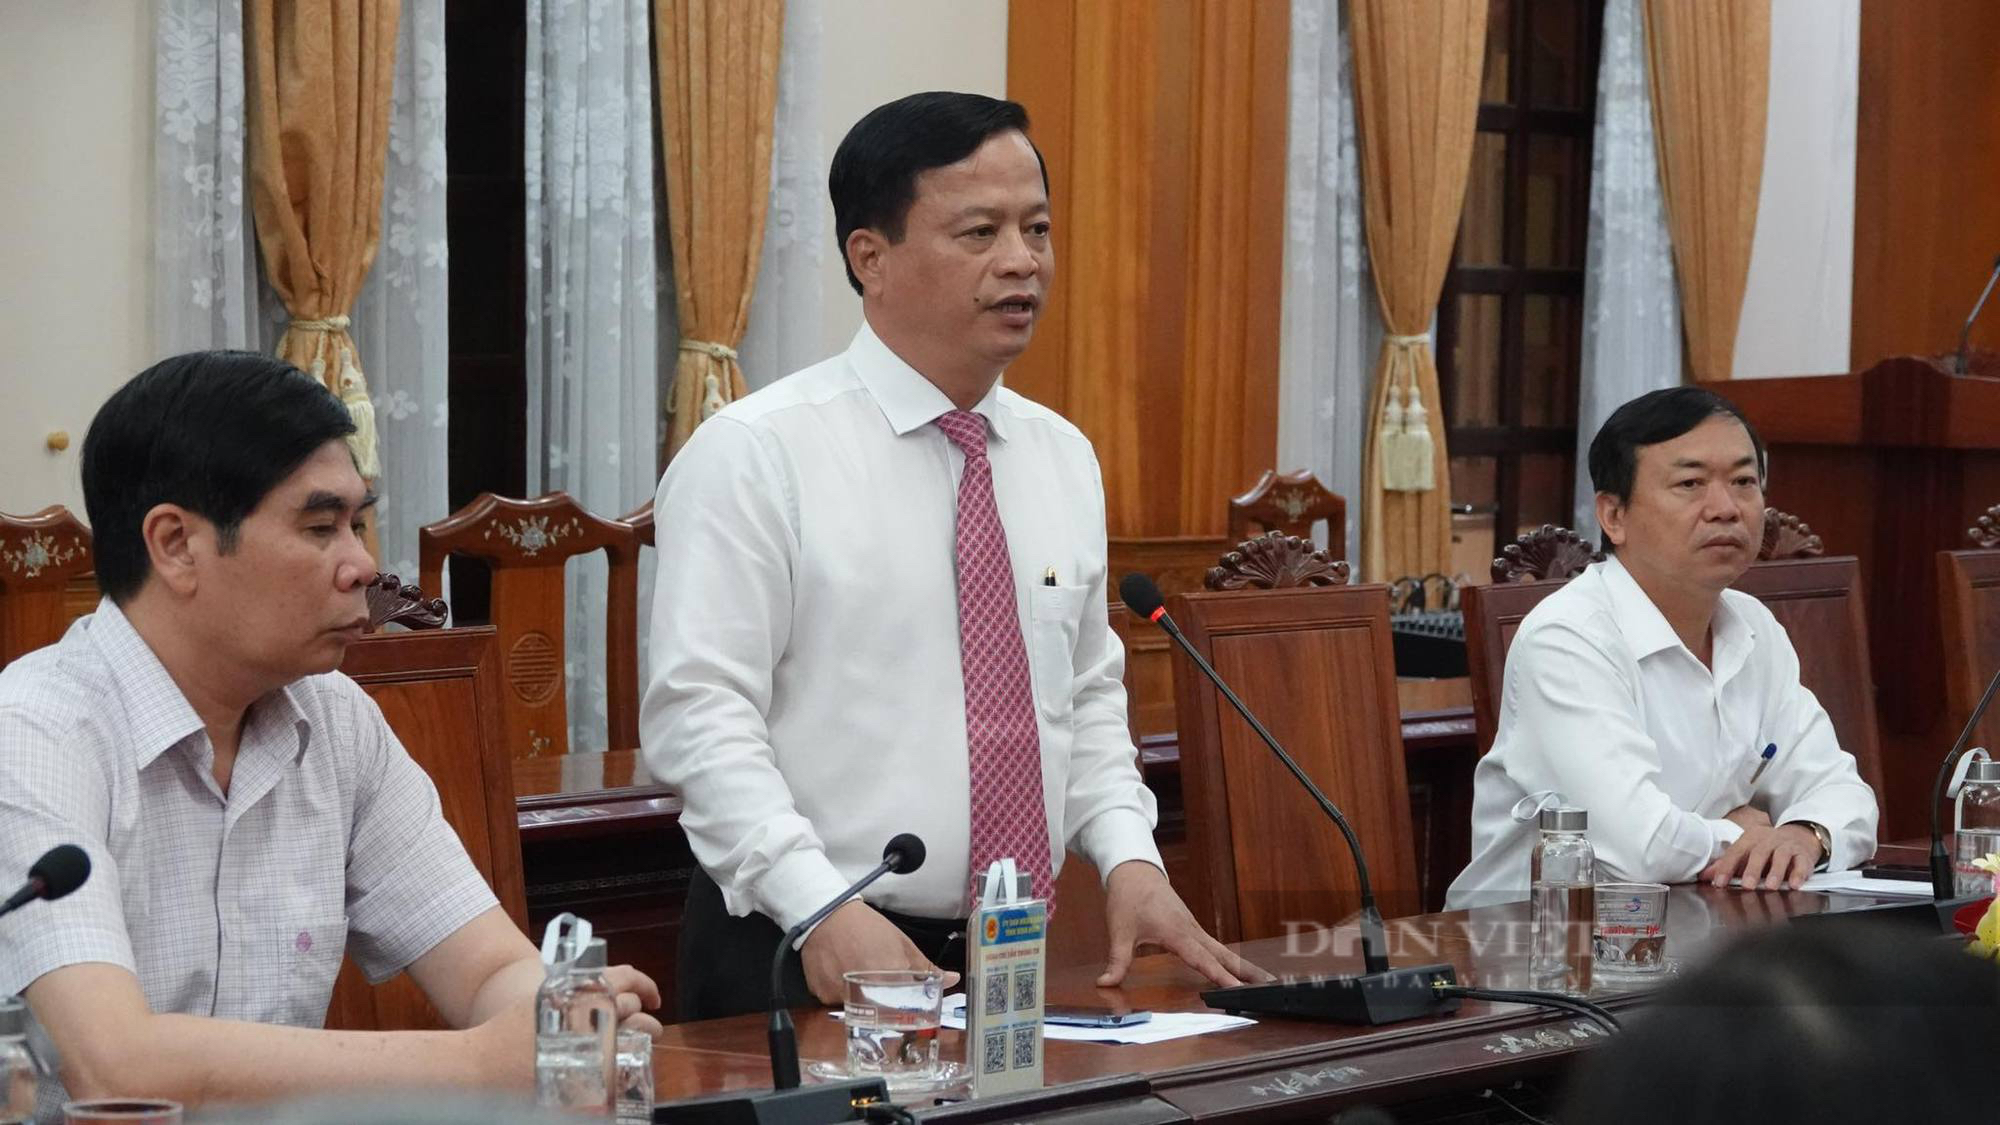 Bí thư Thị ủy giữ chức Trưởng Ban quản lý Khu kinh tế tỉnh Bình Định  - Ảnh 2.